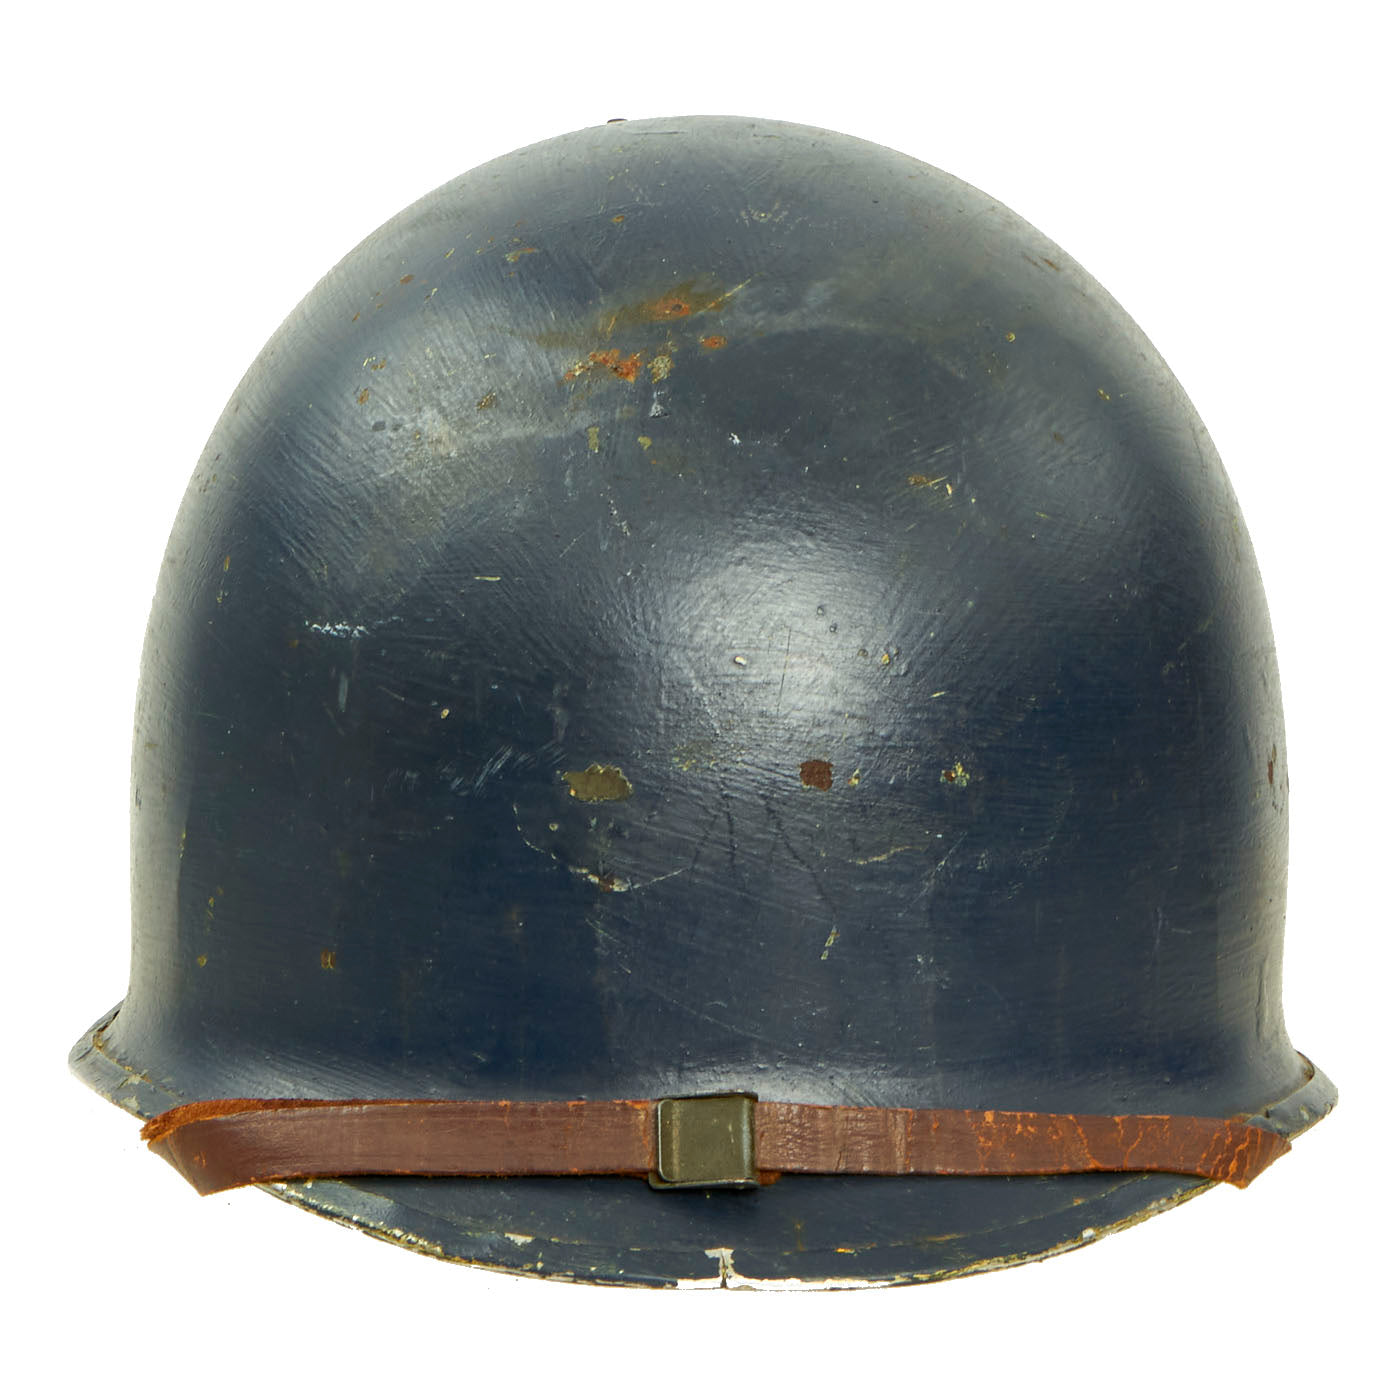 外帽内帽の揃った完全品ですWW2アメリカ軍M1ヘルメット Fixed Bale Front Seam　実物